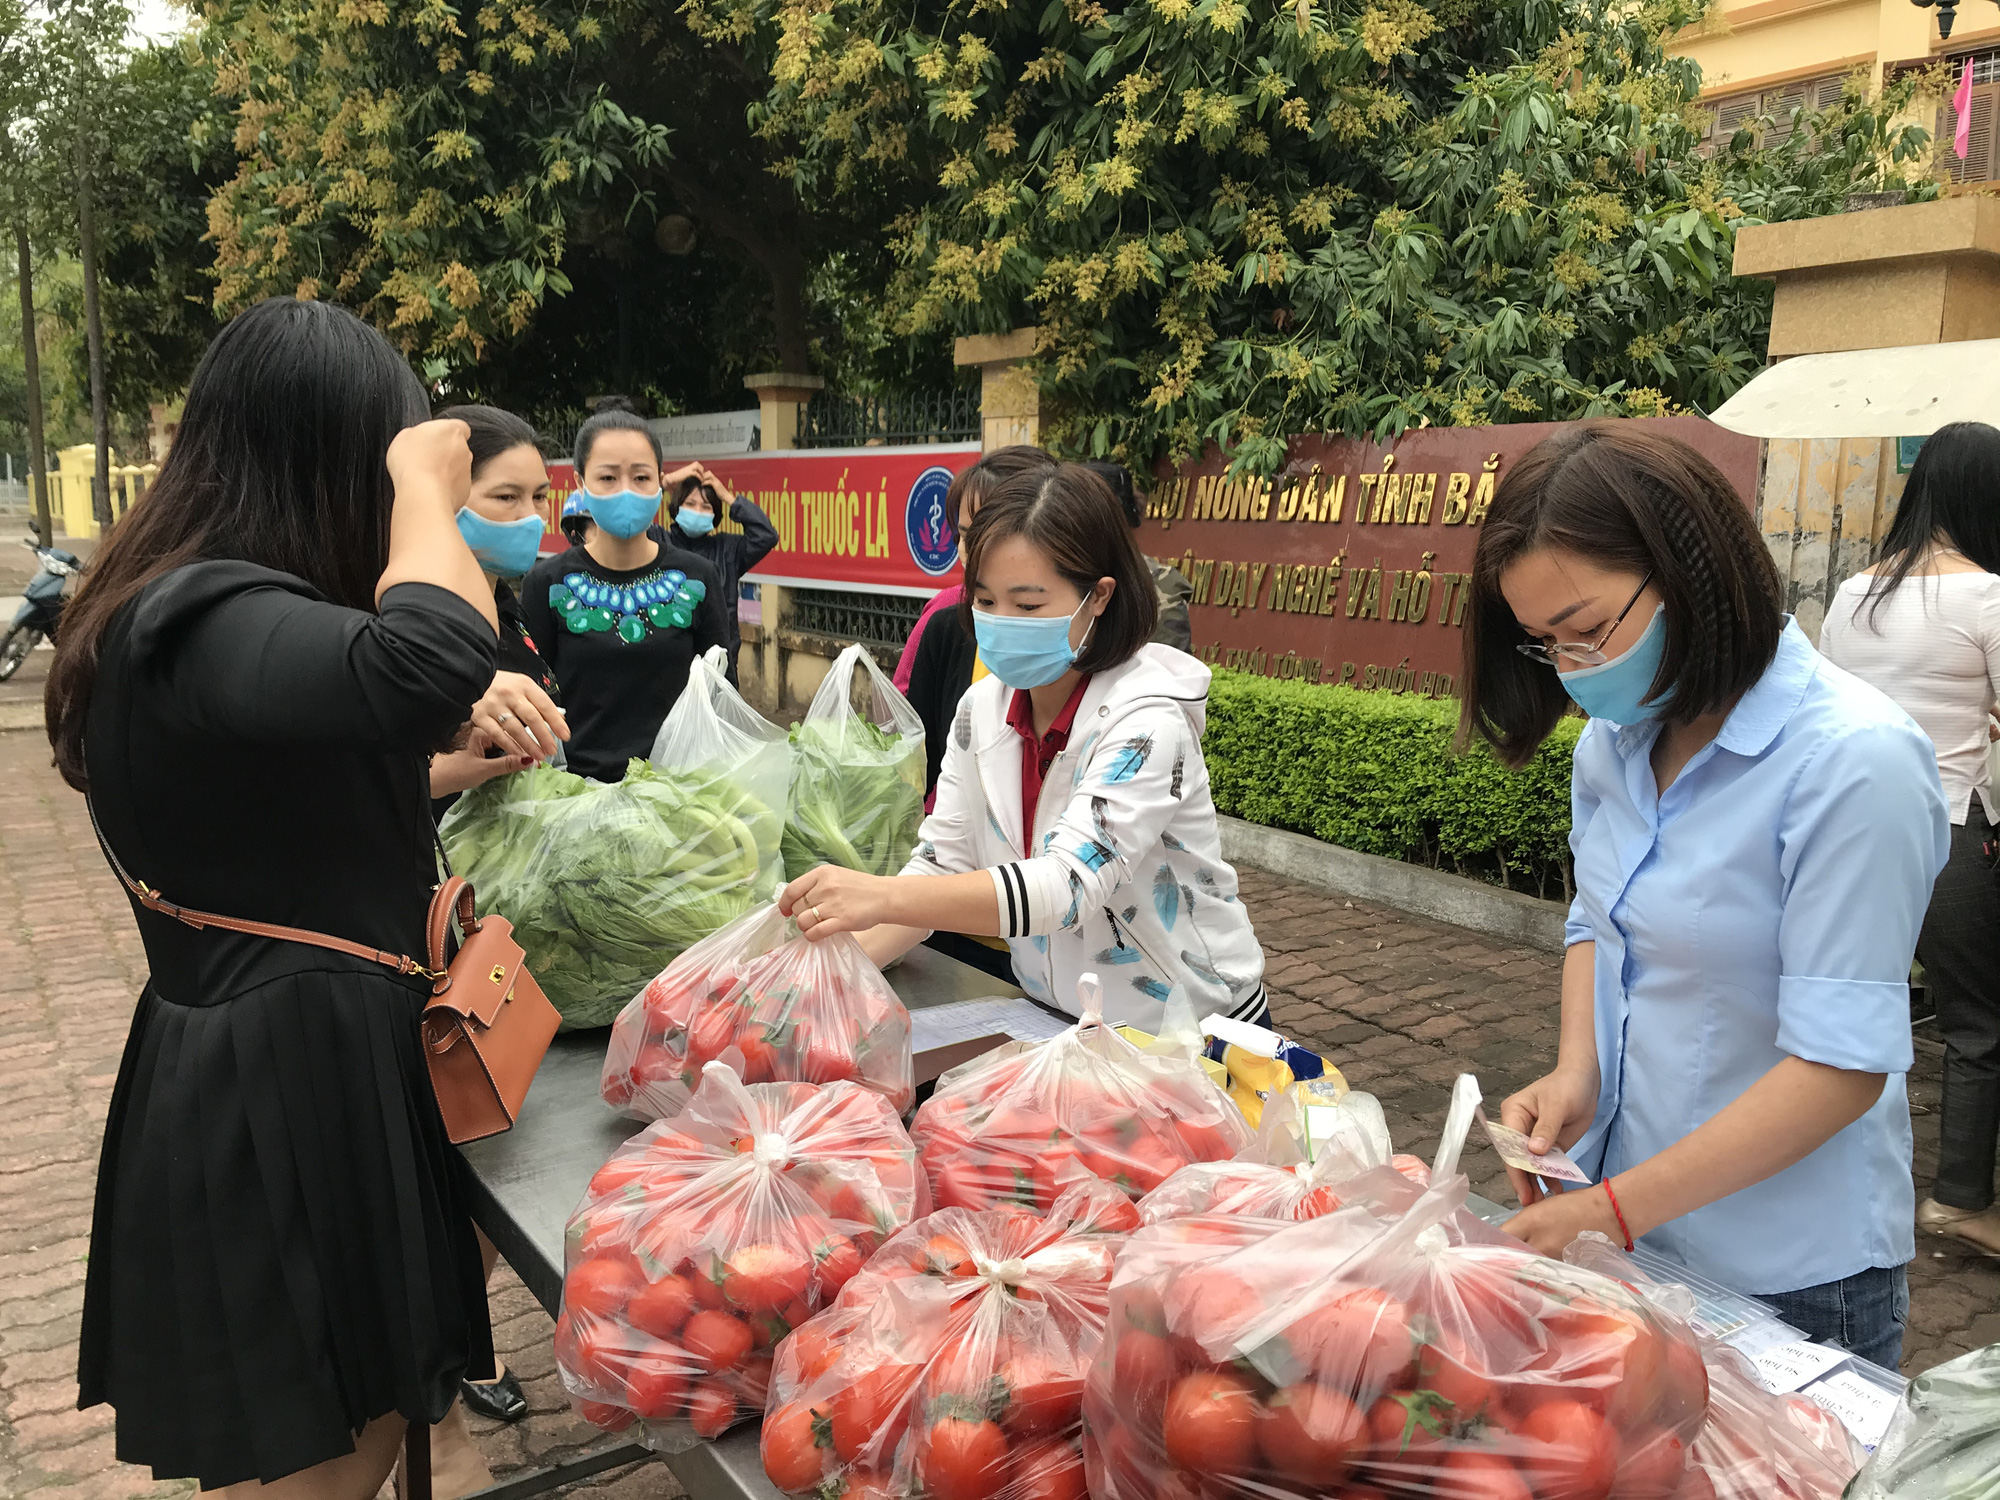 Trung tâm Dạy nghề và hỗ trợ nông dân tỉnh Bắc Ninh: 20 năm sát cánh cùng nhà nông - Ảnh 3.